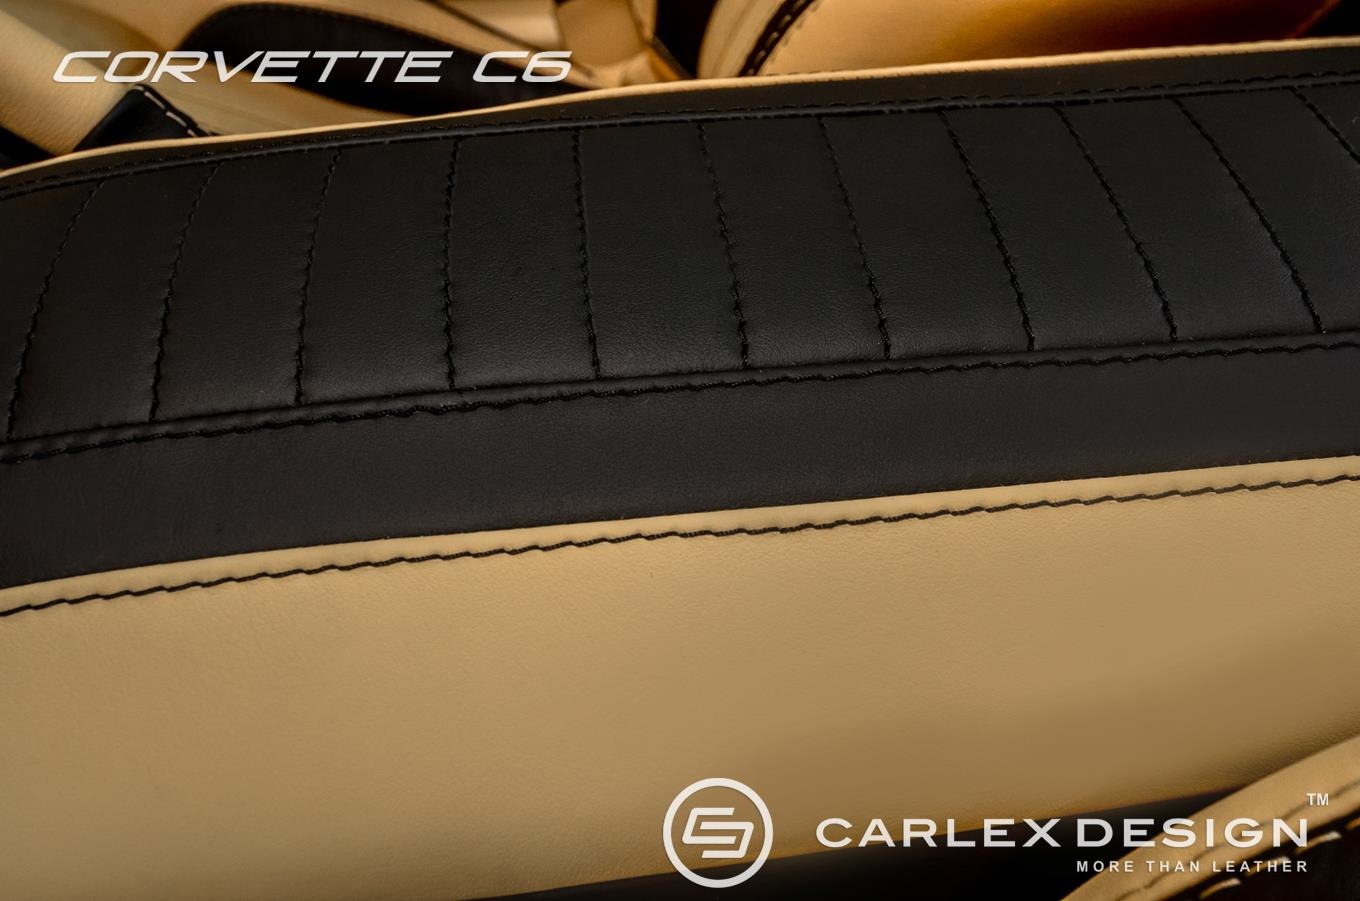 carlex-design-corvette-c6-6